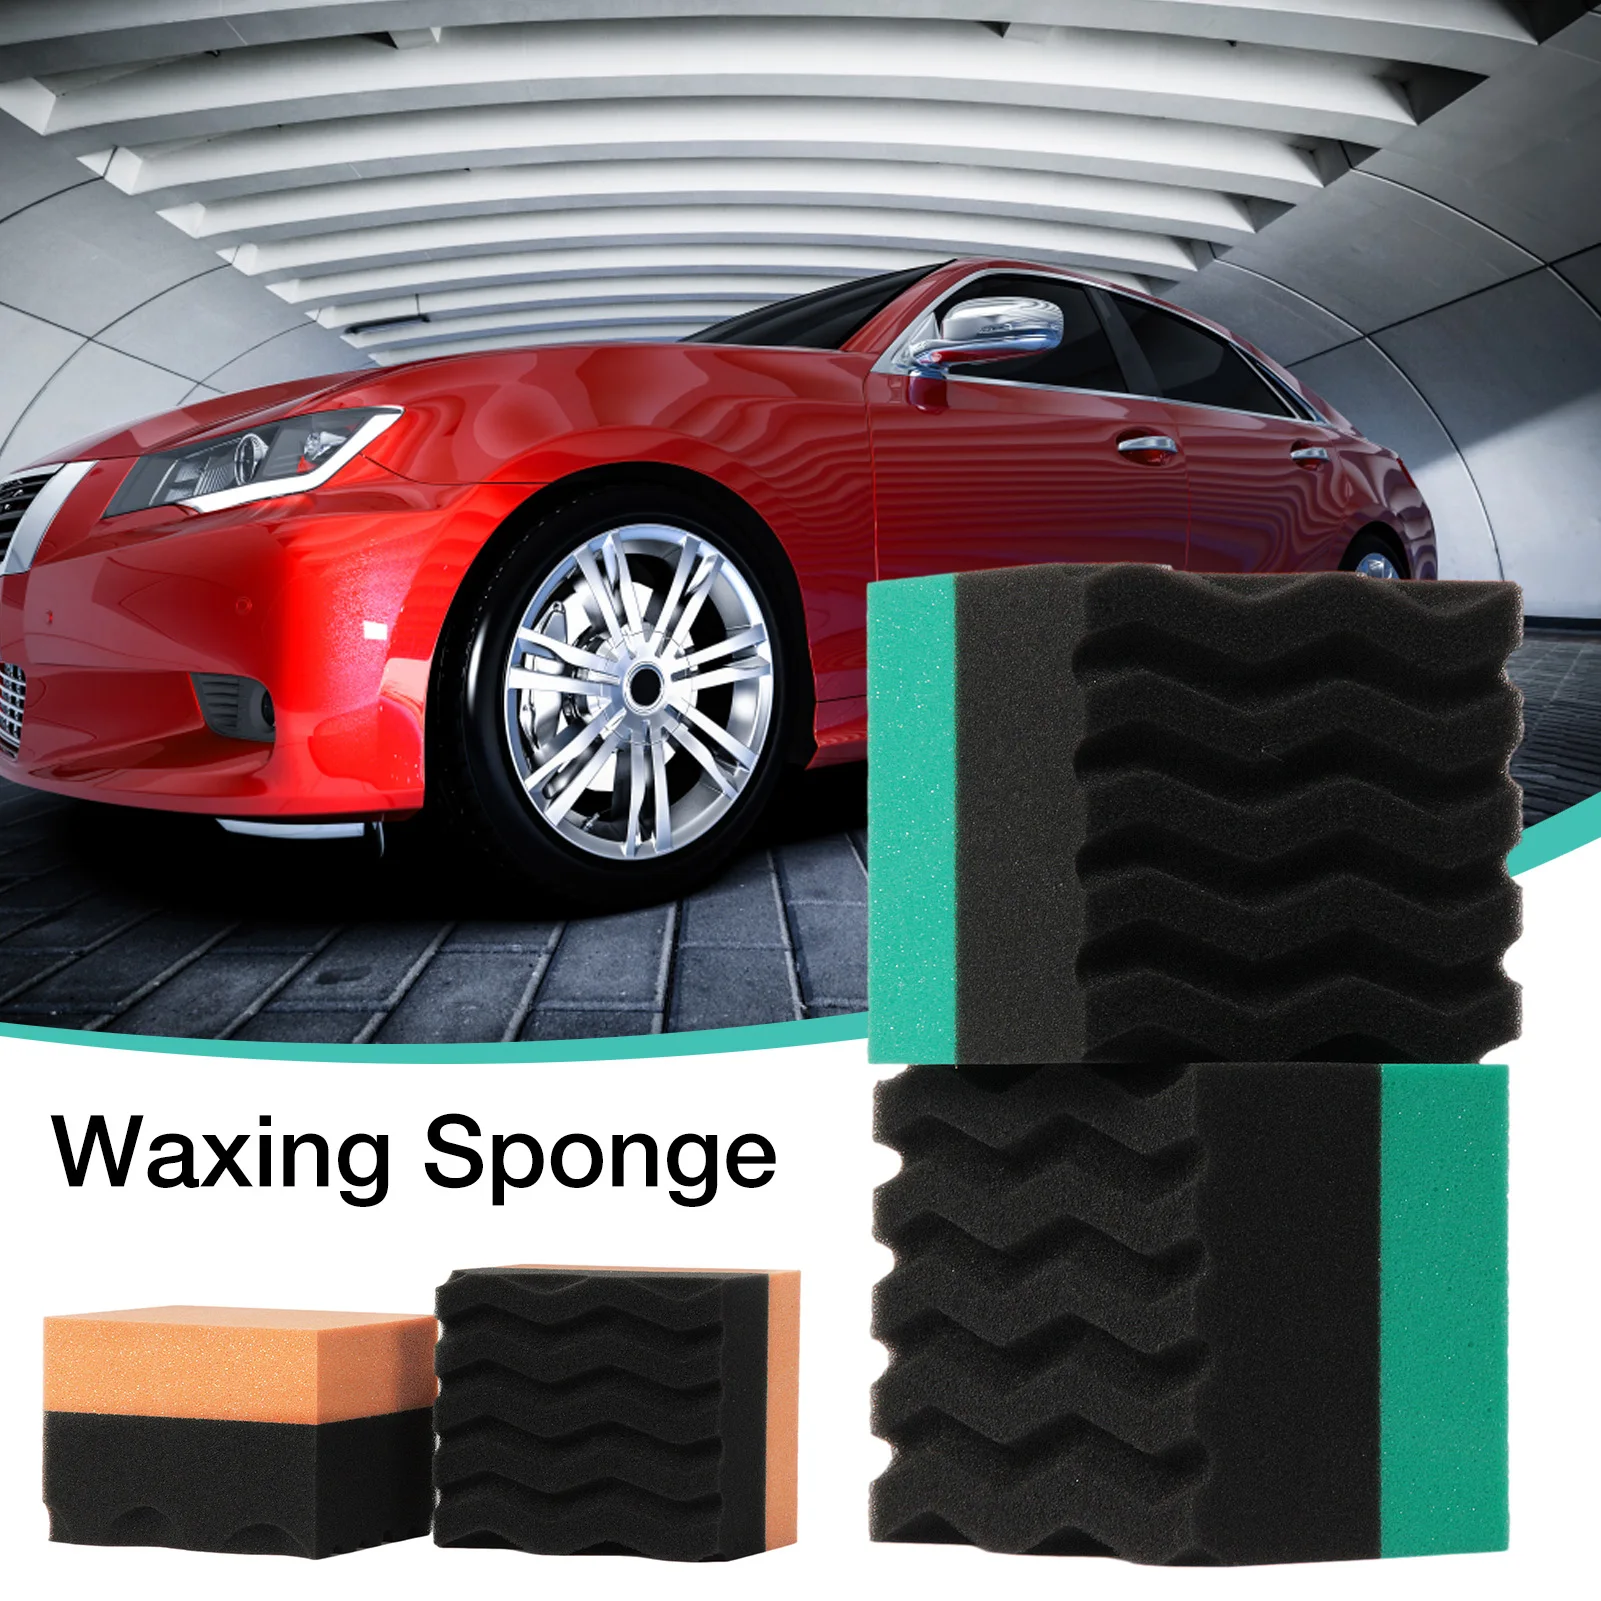 

Tire Contour Dressing Applicator Pads Tire Shine Applicator Waxing Sponge Car Cleaning Supplies Polishing Sponge Wax Dropship